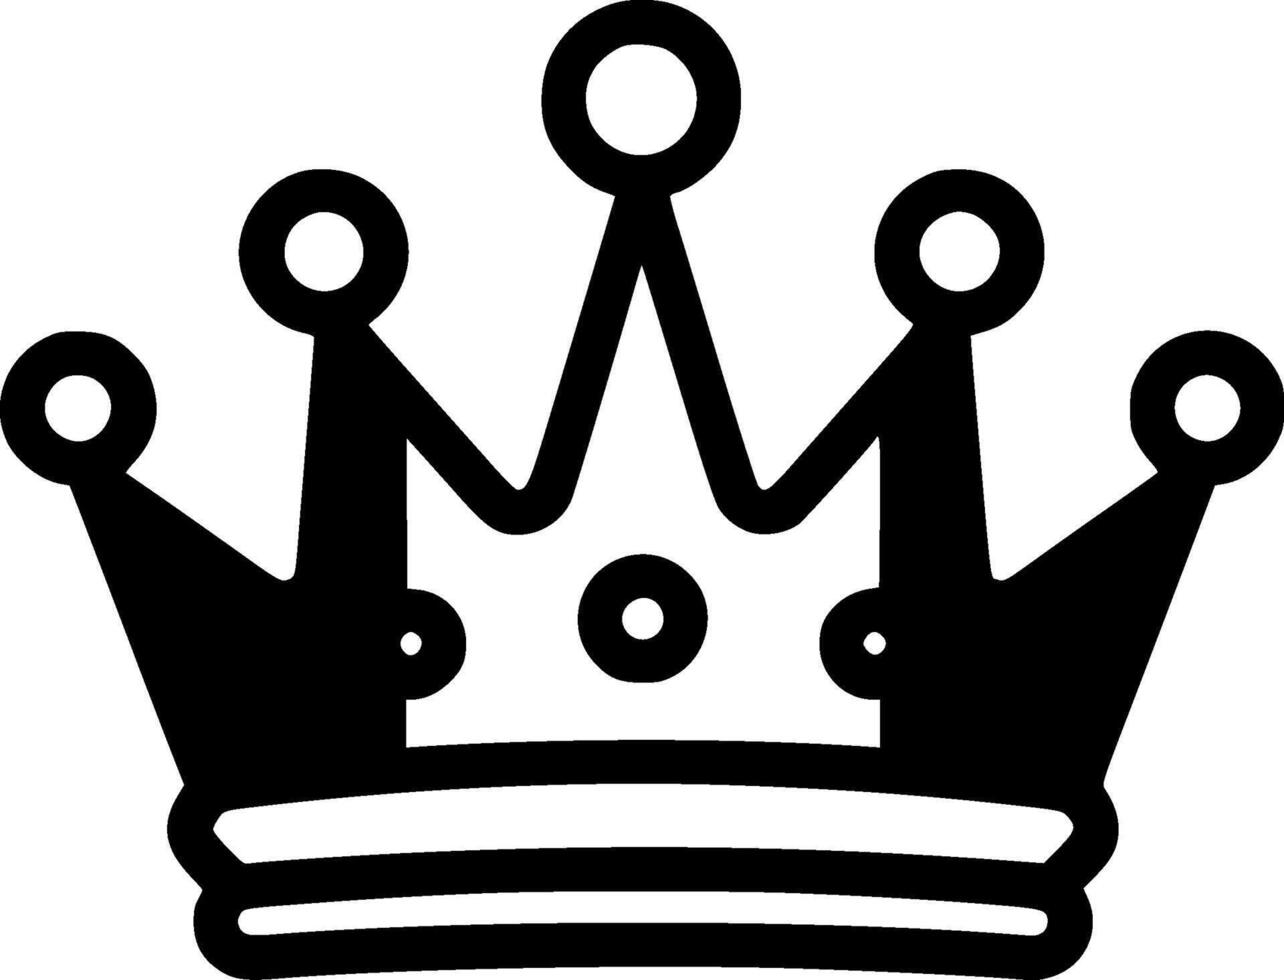 corona - minimalista y plano logo - ilustración vector